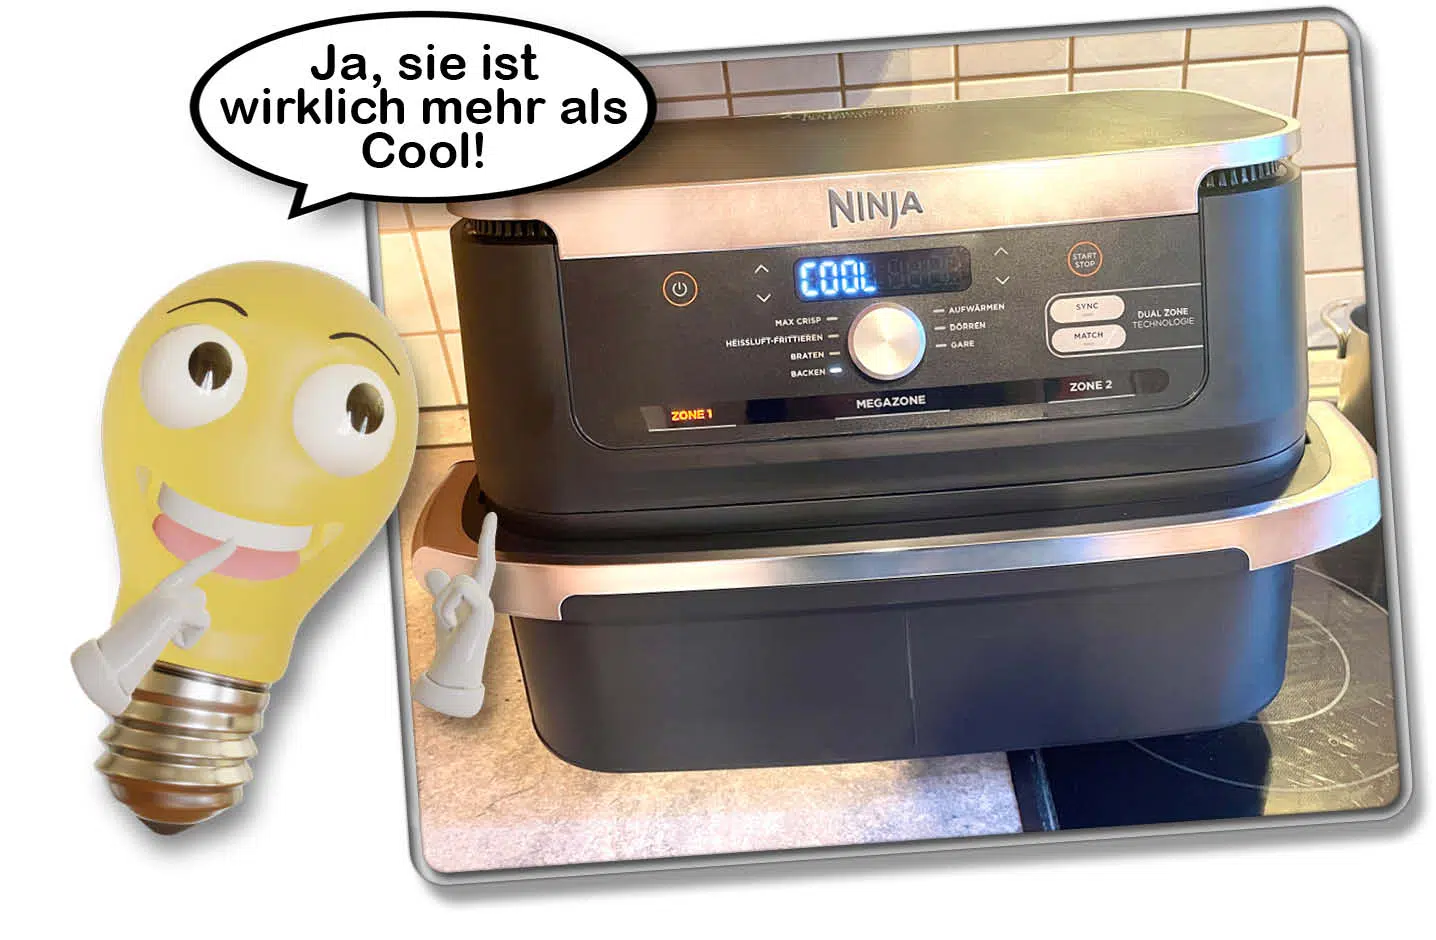 Die Ninja Foodi FlexDrawer mit 10,4 Liter Volumen hat sich absolut bewährt im Test!